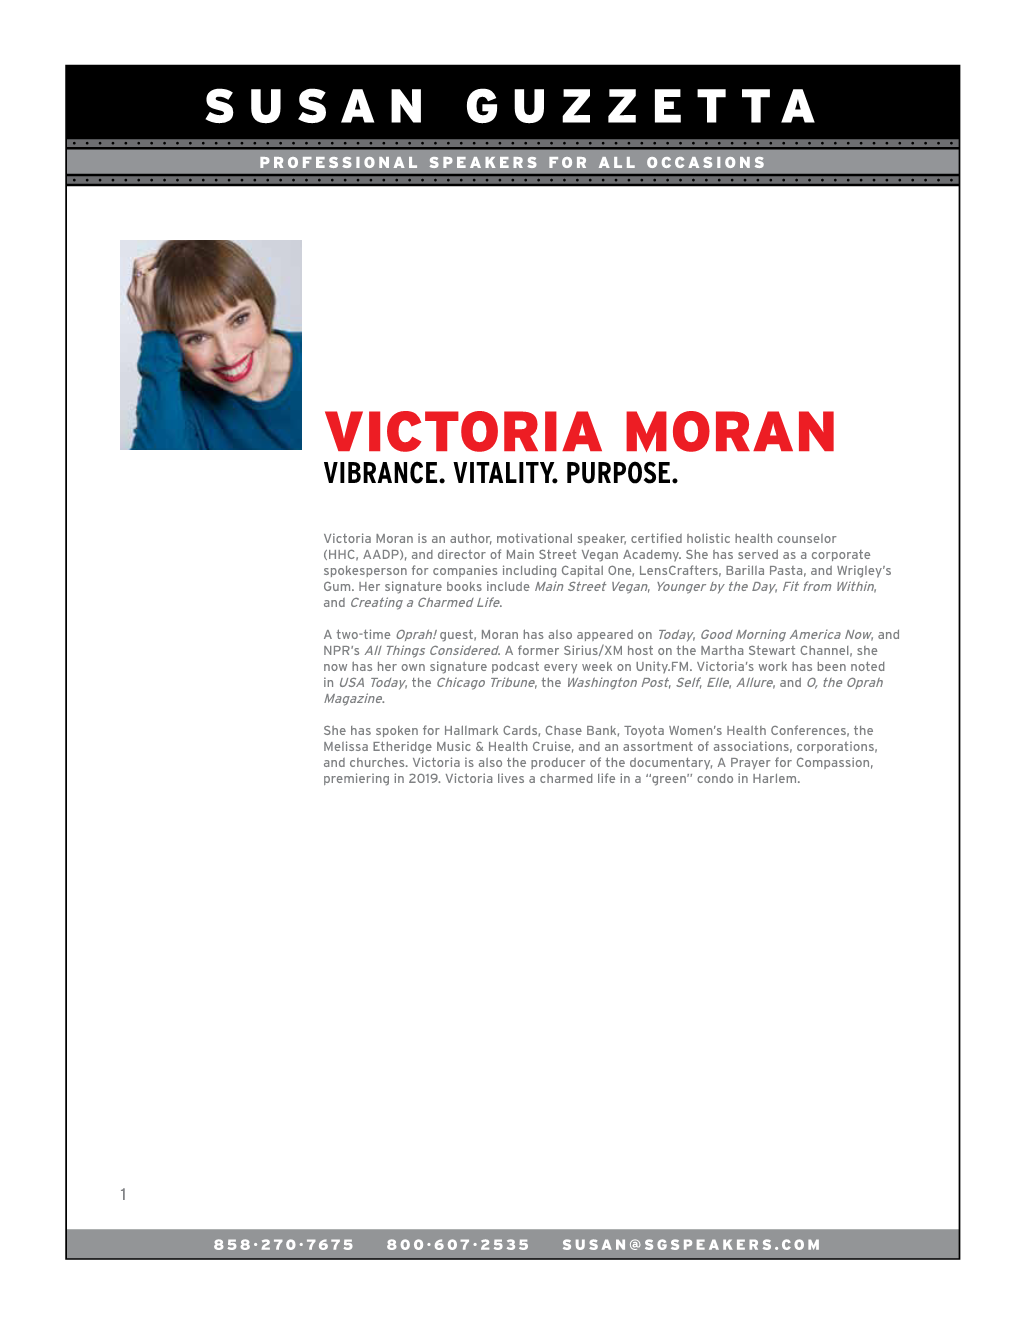 Victoria Moran Vibrance